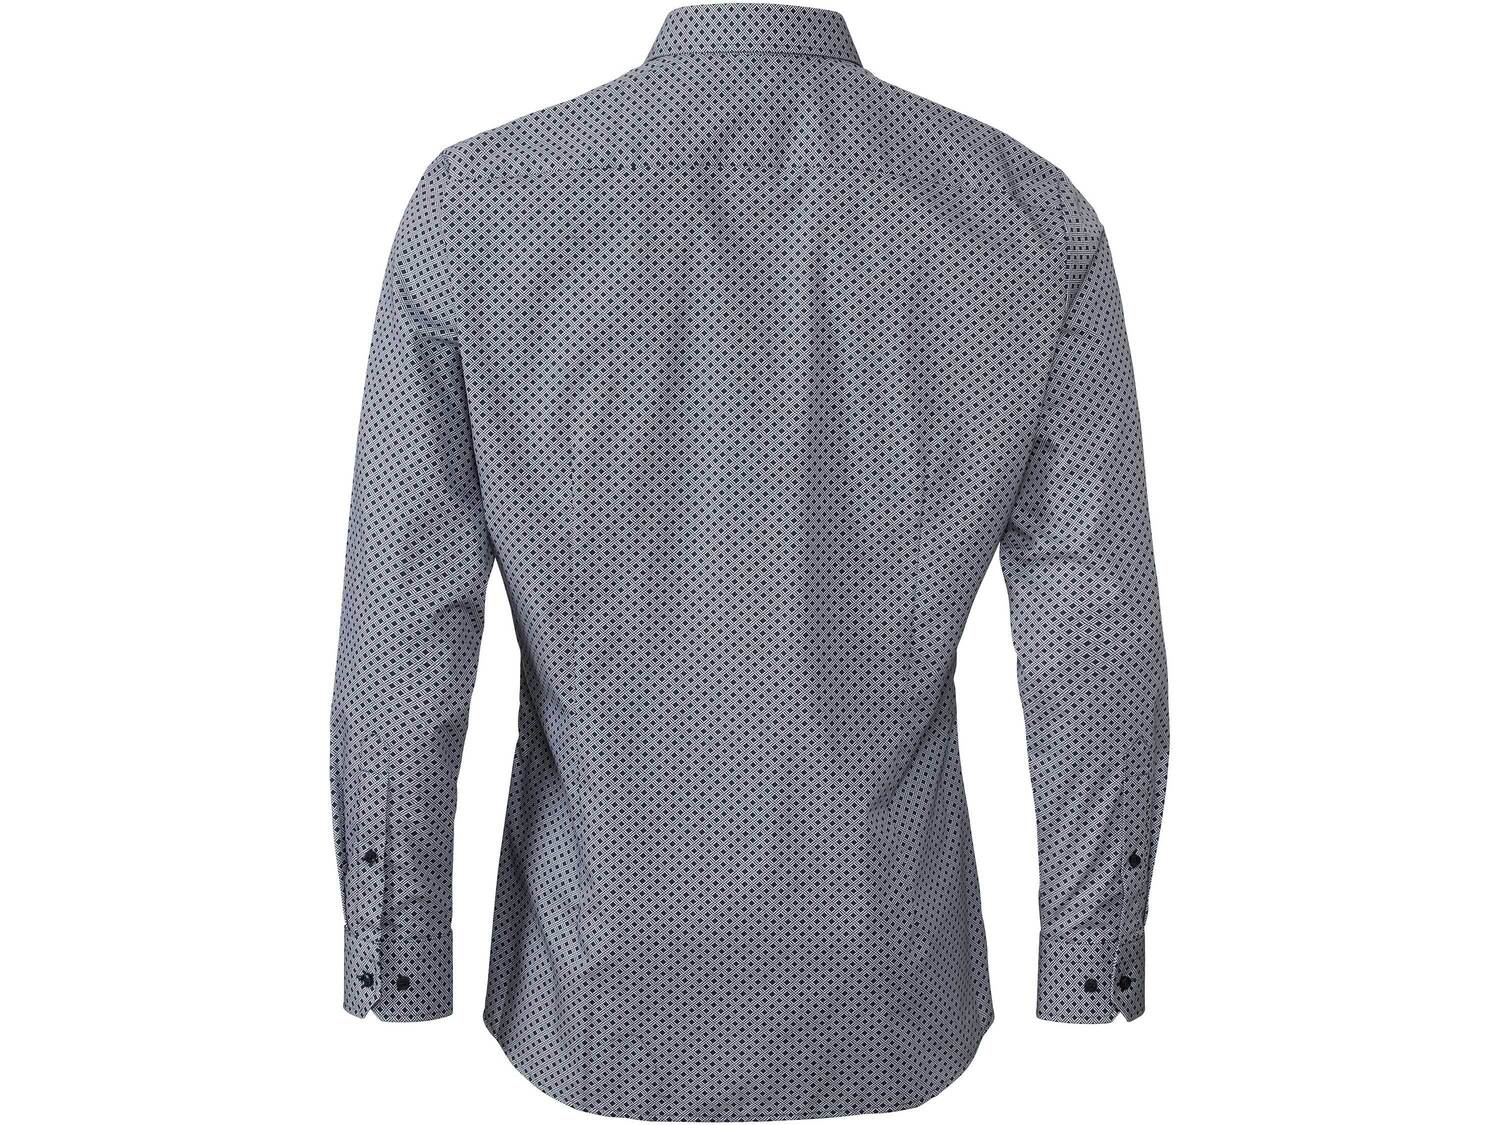 Koszula biznesowa , cena 49,99 PLN 
- rozmiary: 39-42
- 100% bawełny
- wkładki ...